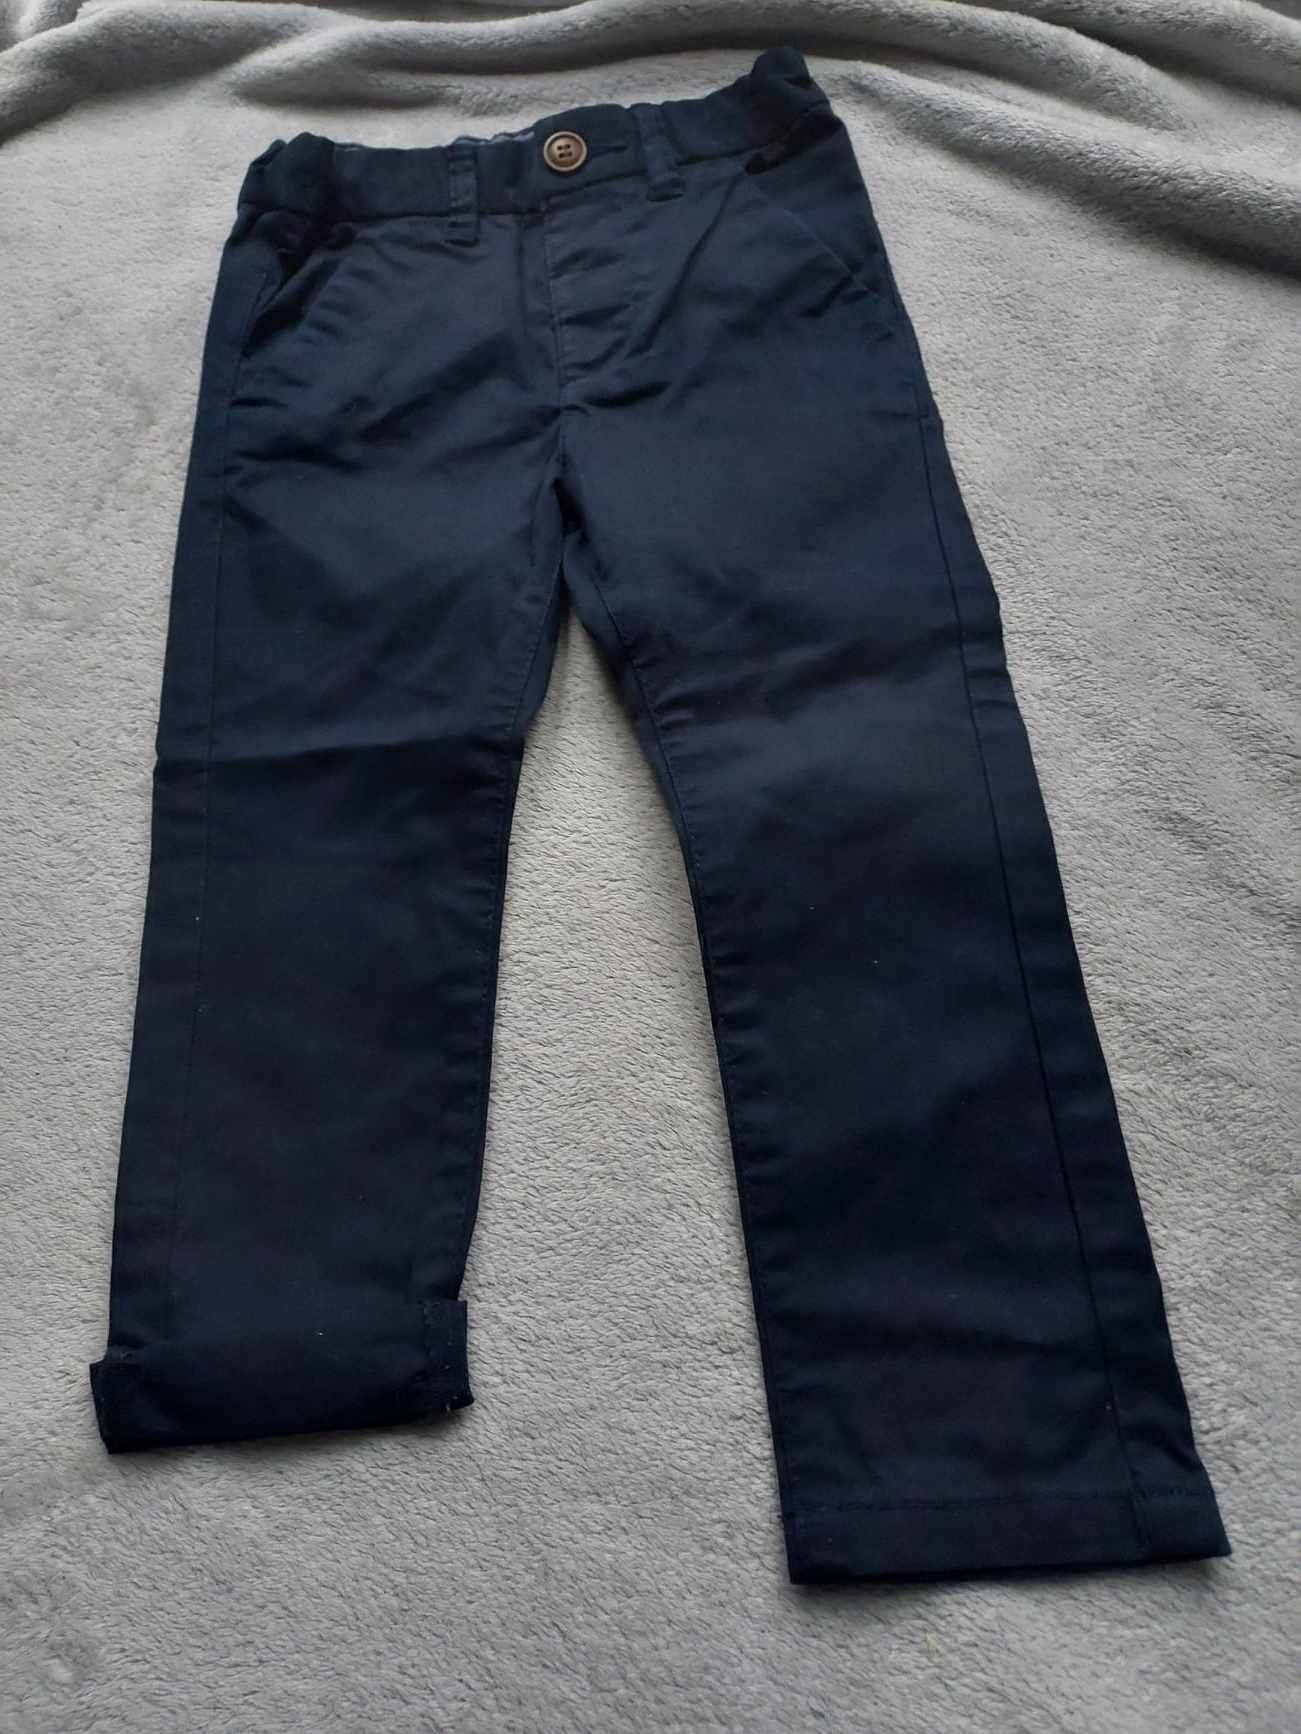 Spodnie dżinsowe 92